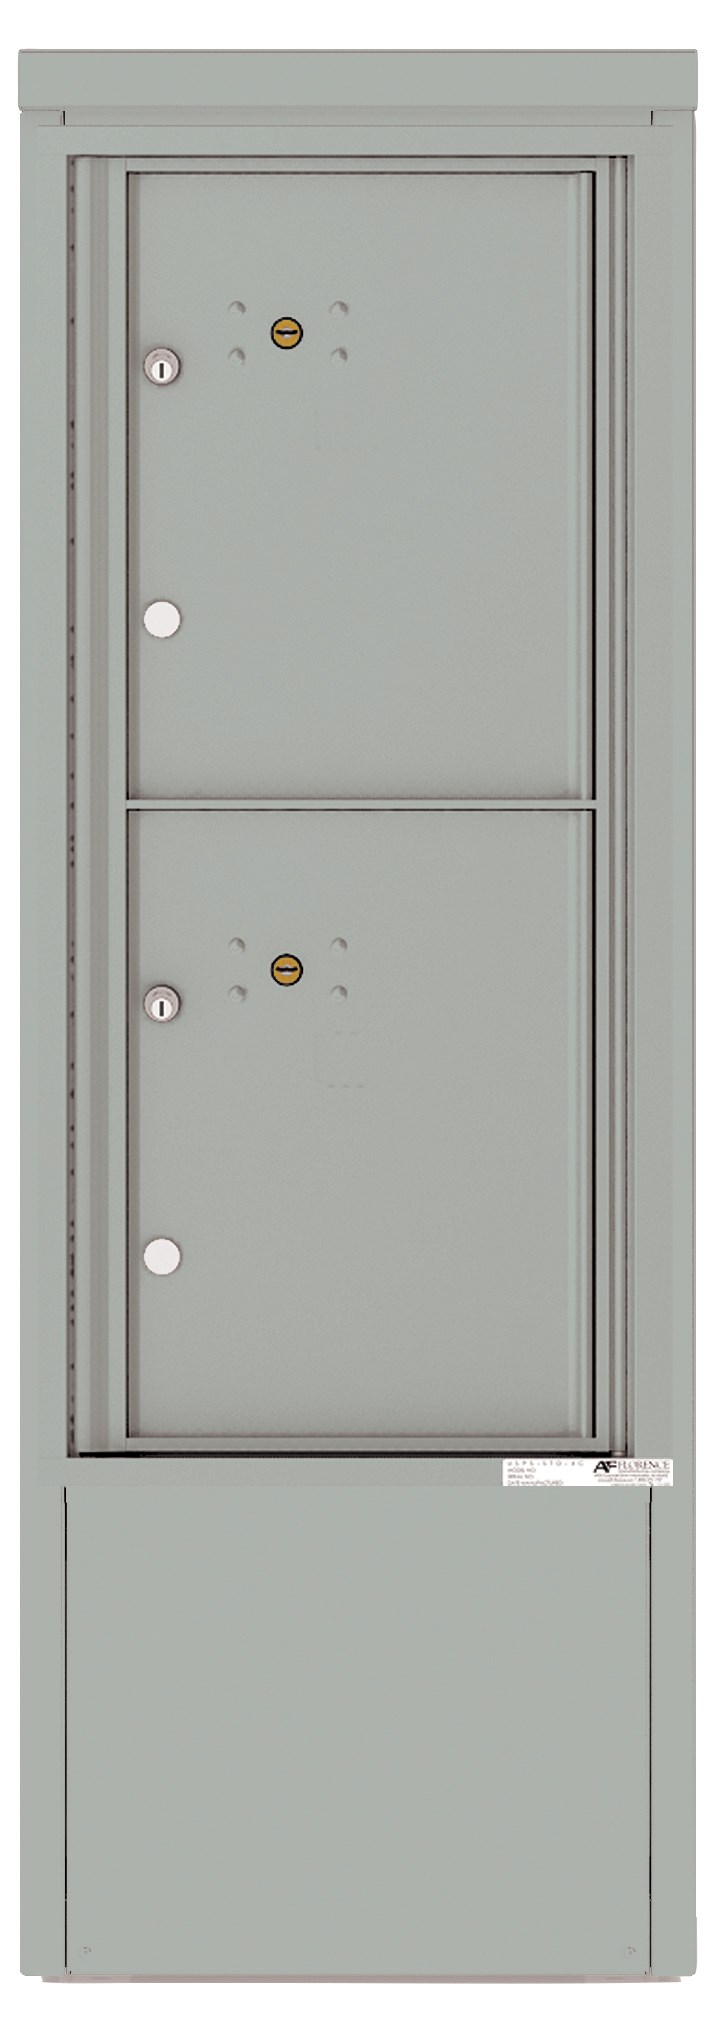 4CADS-2P-D 4C Horizontal Depot Mailbox Silver Speck